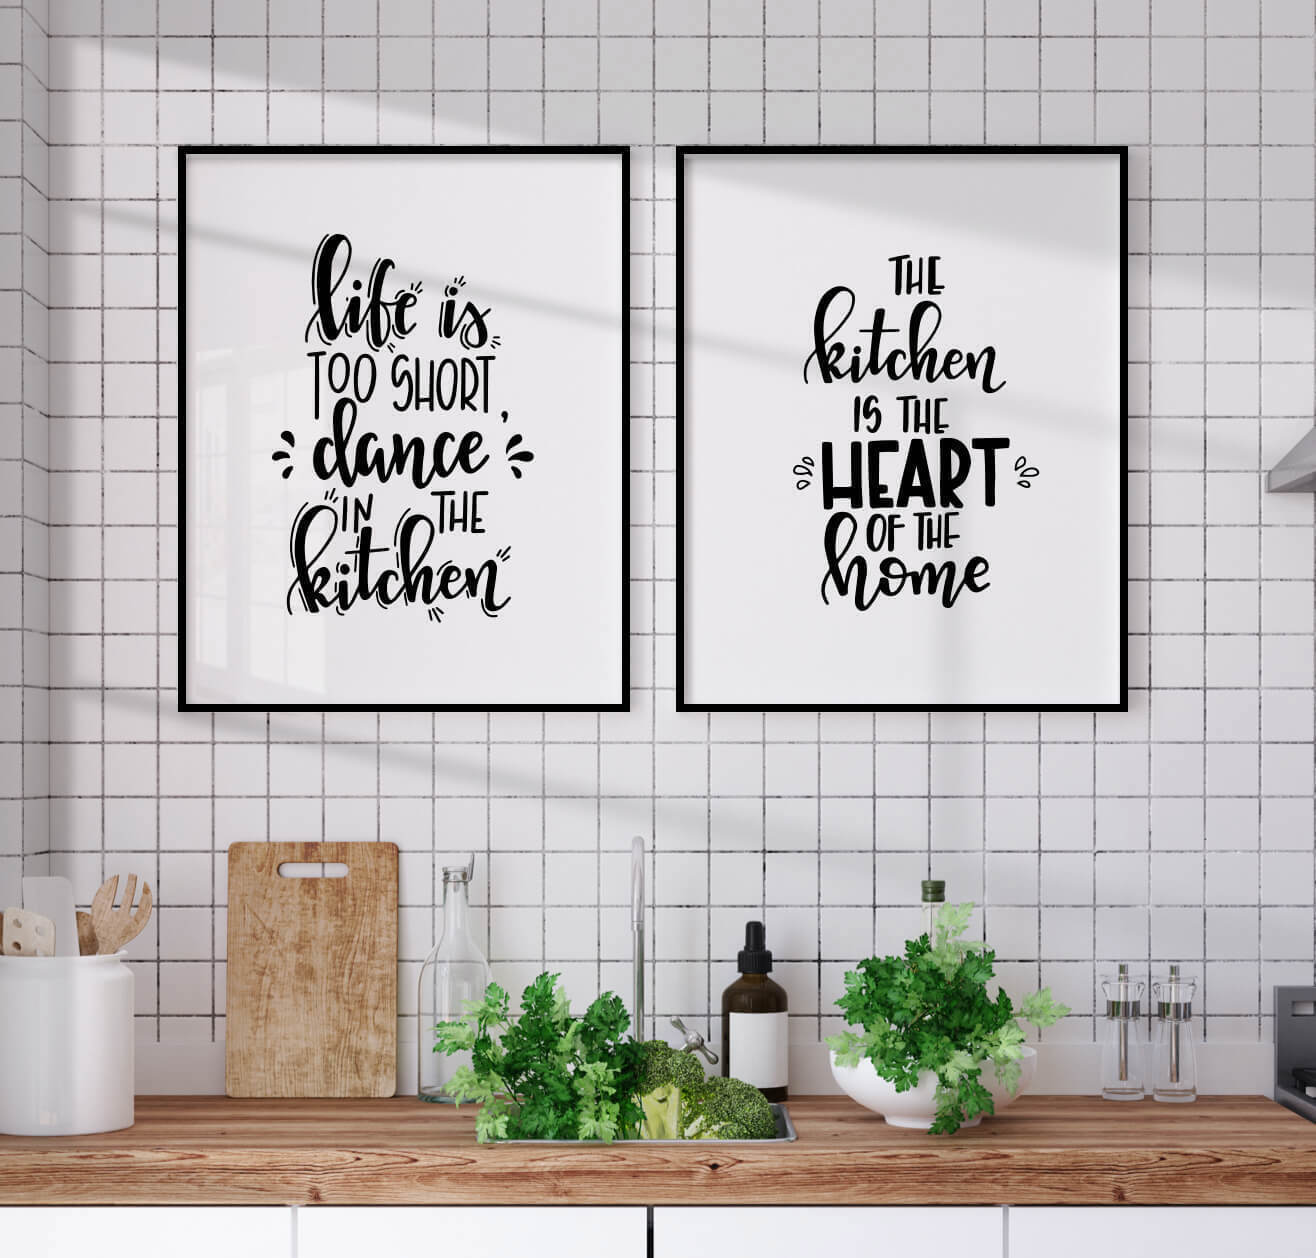 кухня сердце дома картинки